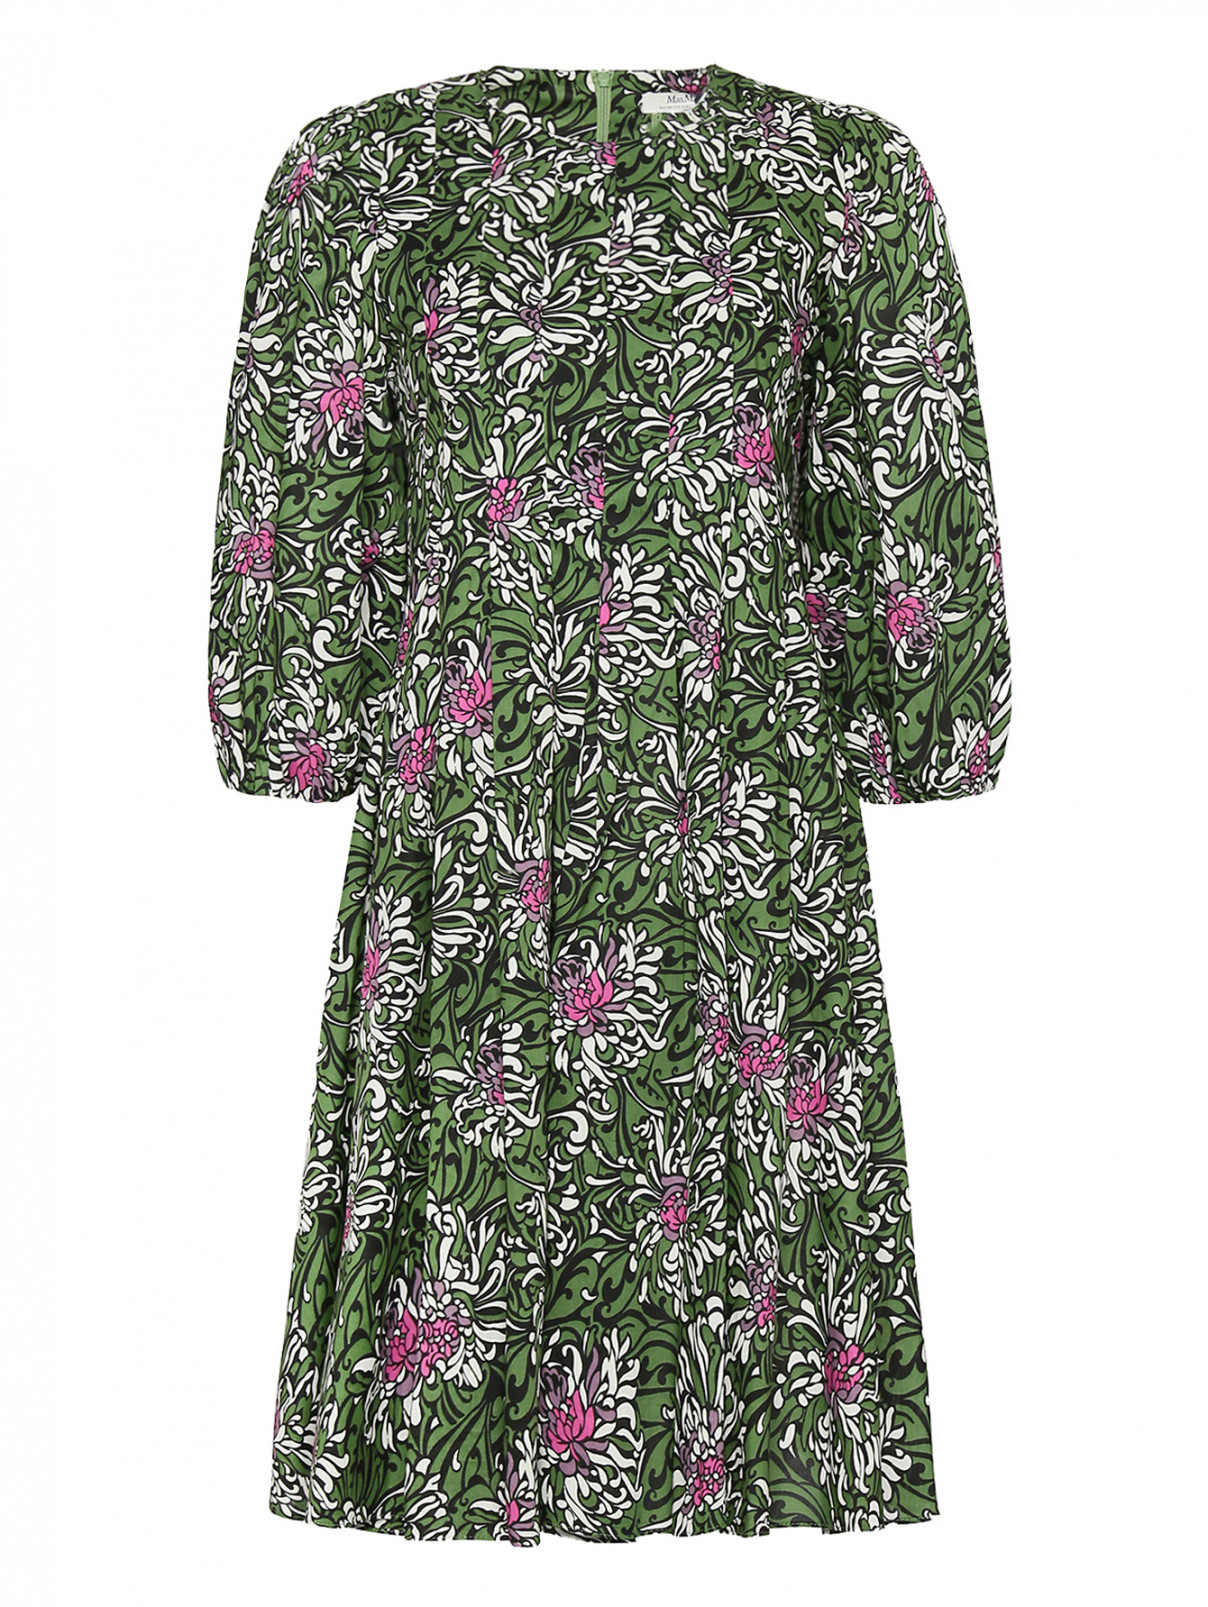 Платье из хлопка с узором Max Mara  –  Общий вид  – Цвет:  Зеленый